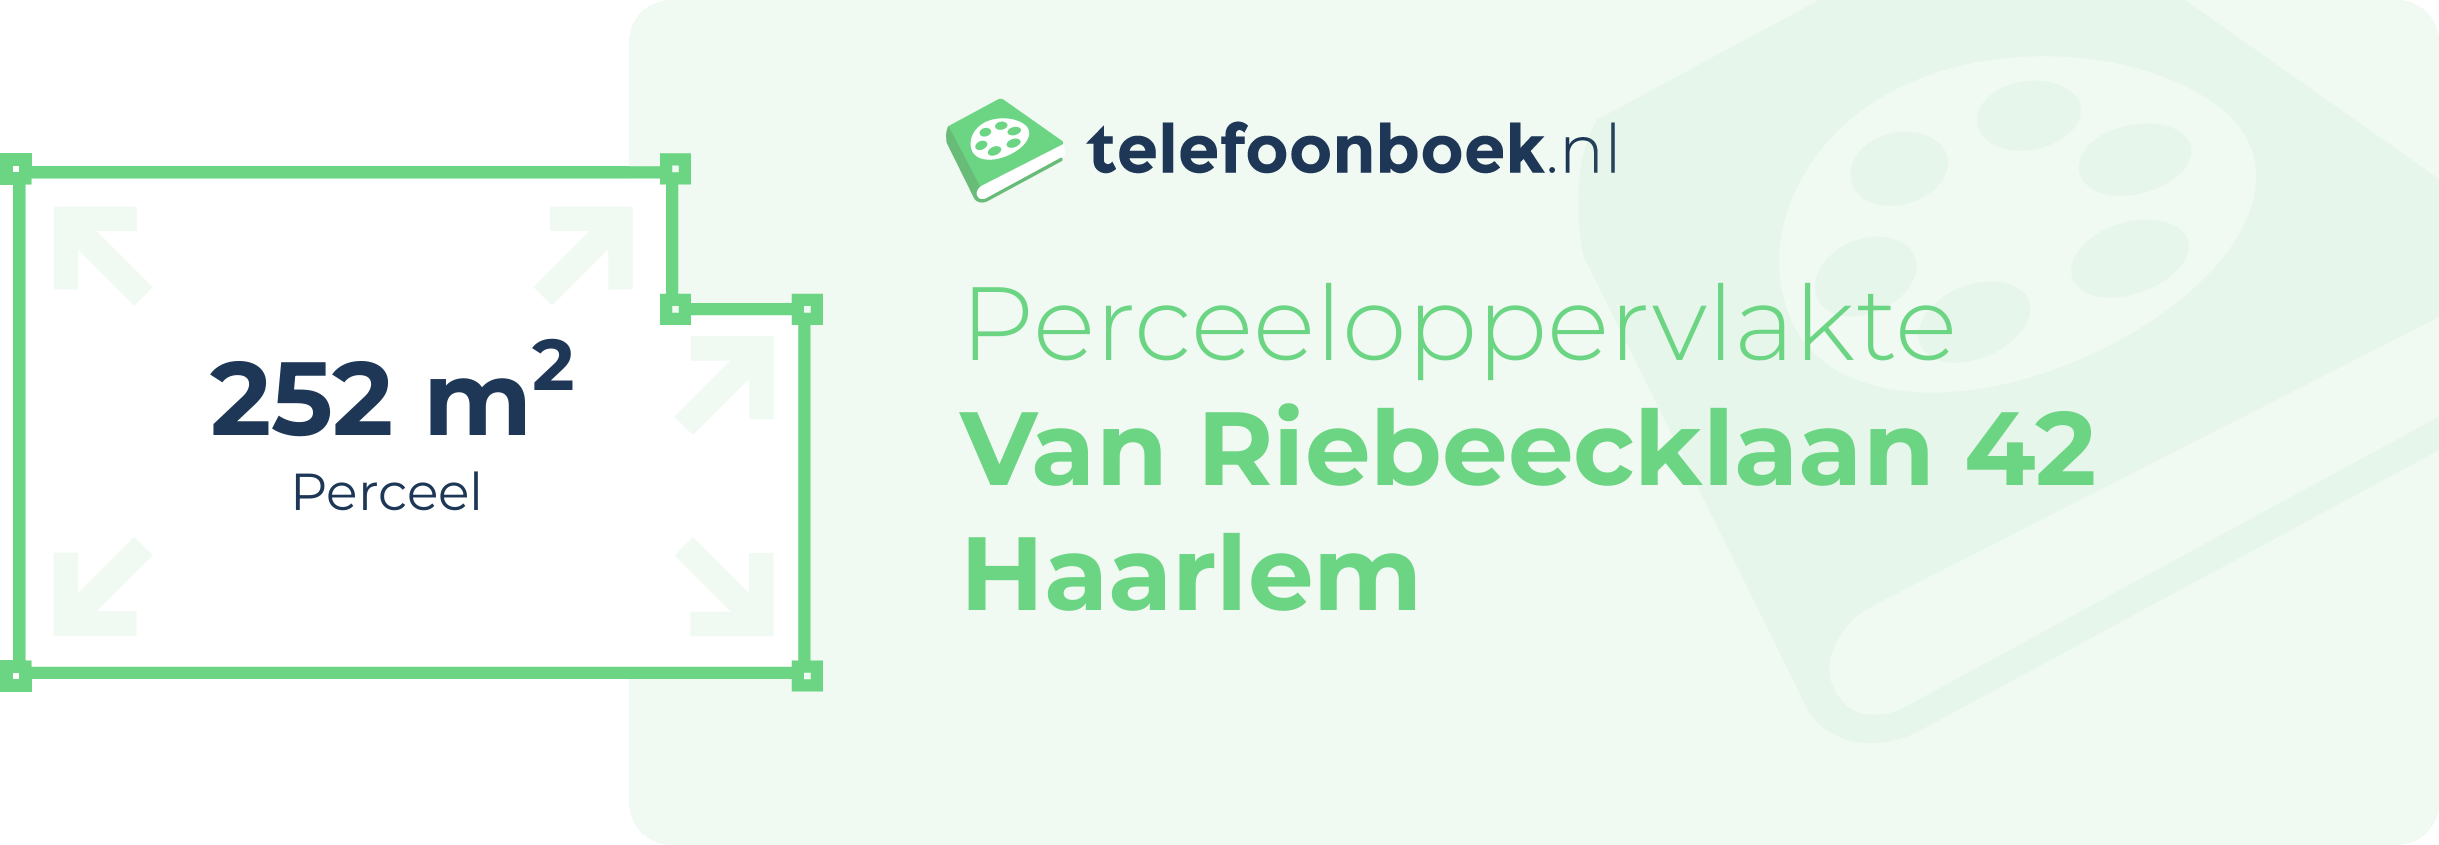 Perceeloppervlakte Van Riebeecklaan 42 Haarlem